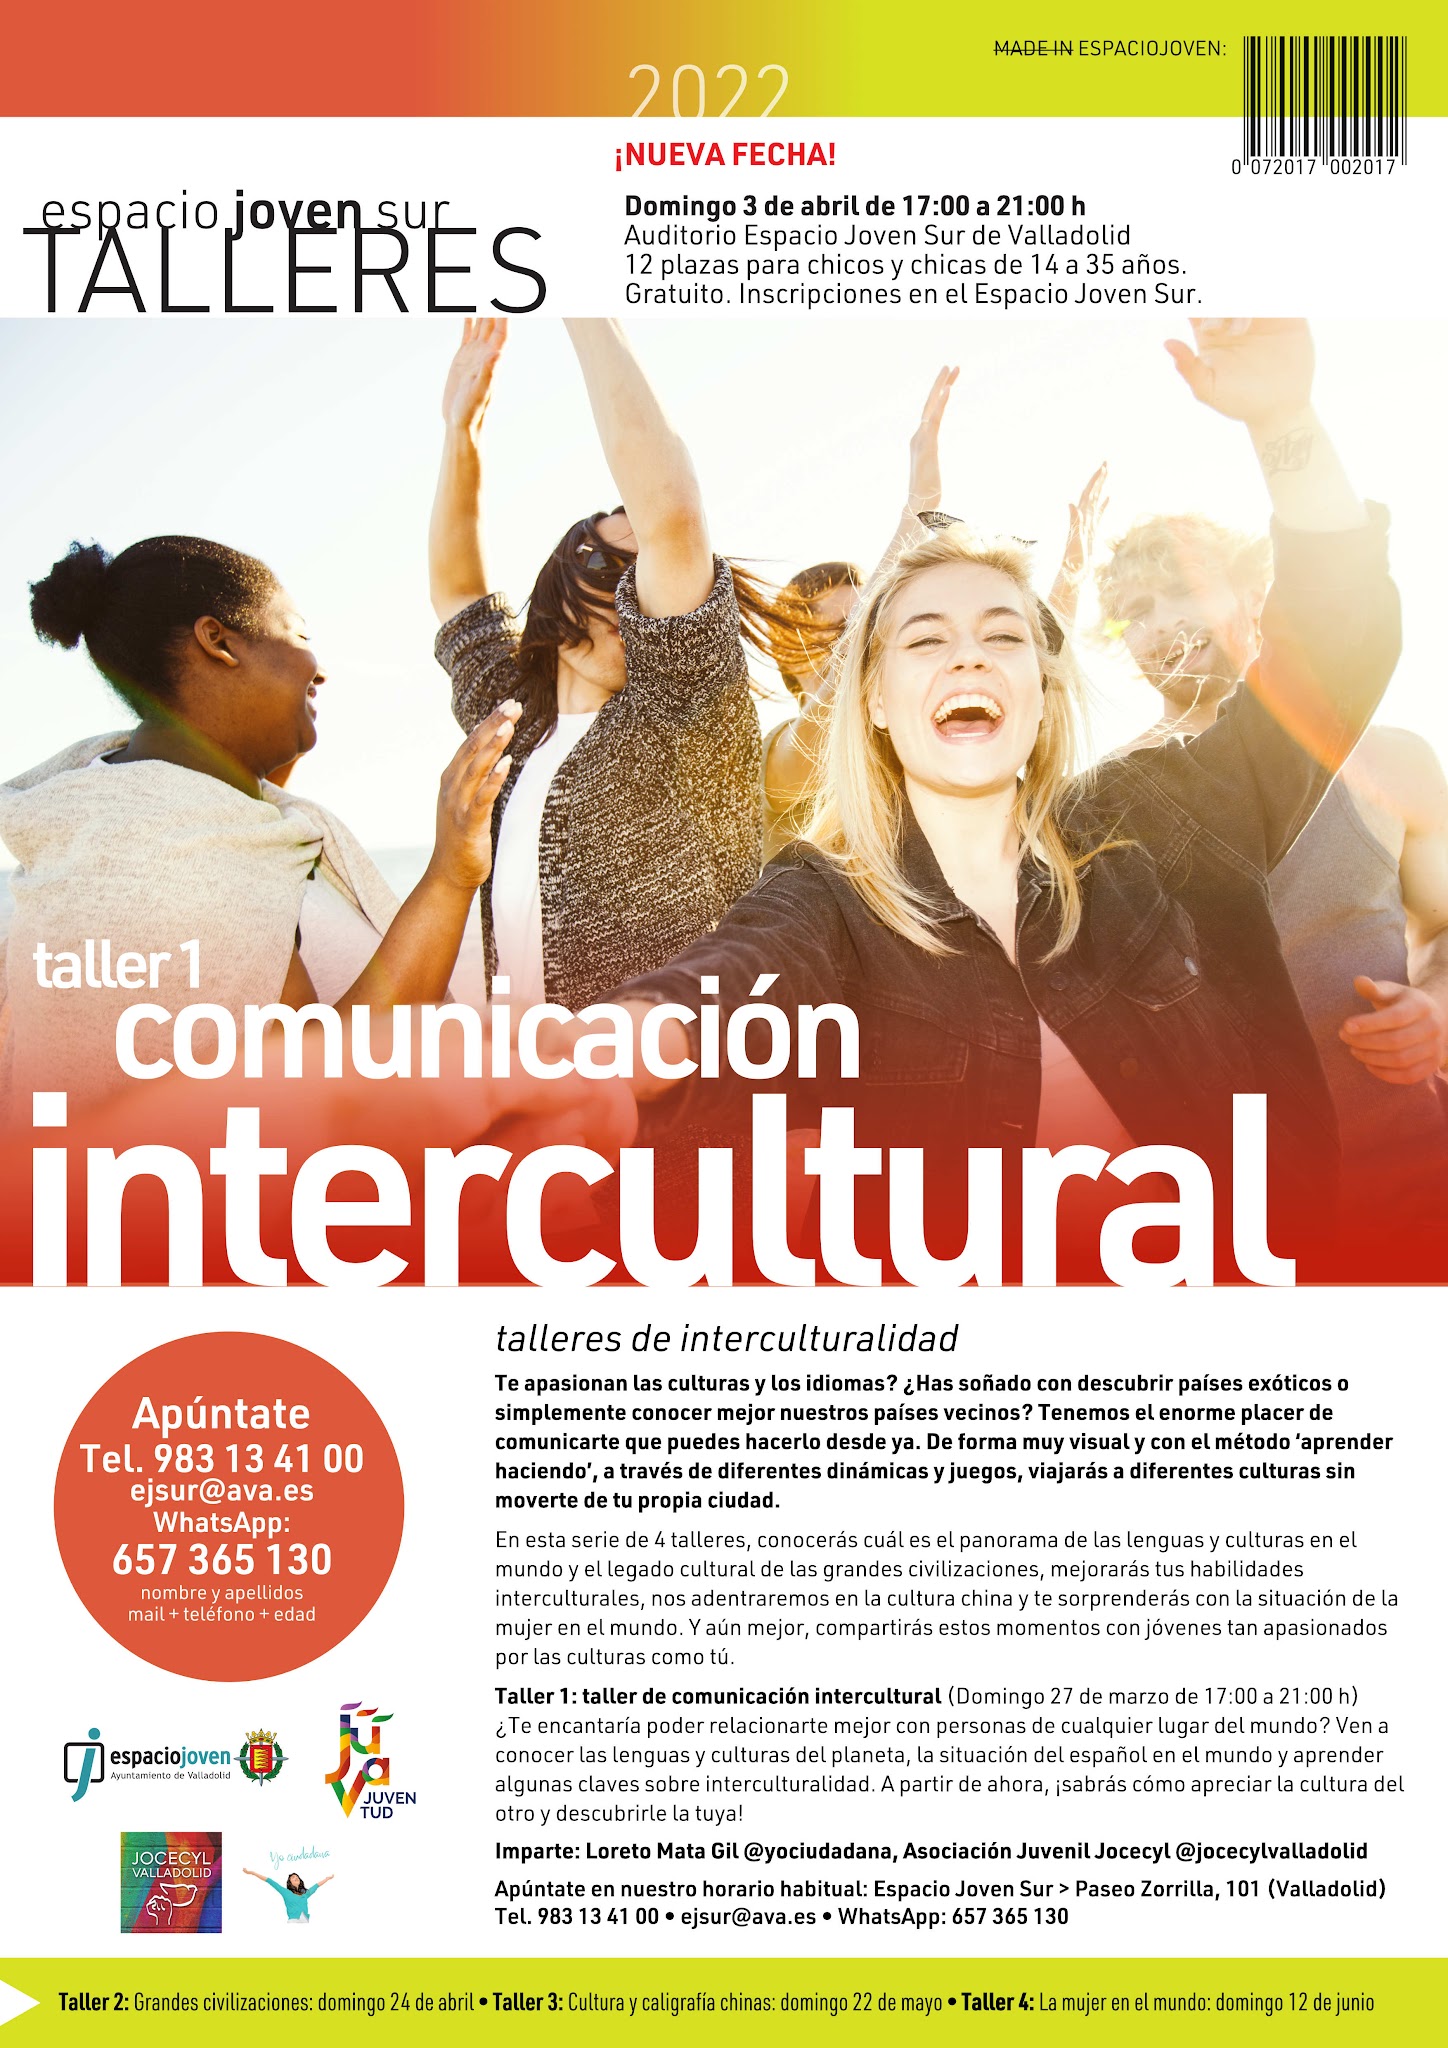 Taller de Comunicación Intercultural en el Espacio Joven Sur, organizado por JOCE Valladolid. Domingo 3 de abril.